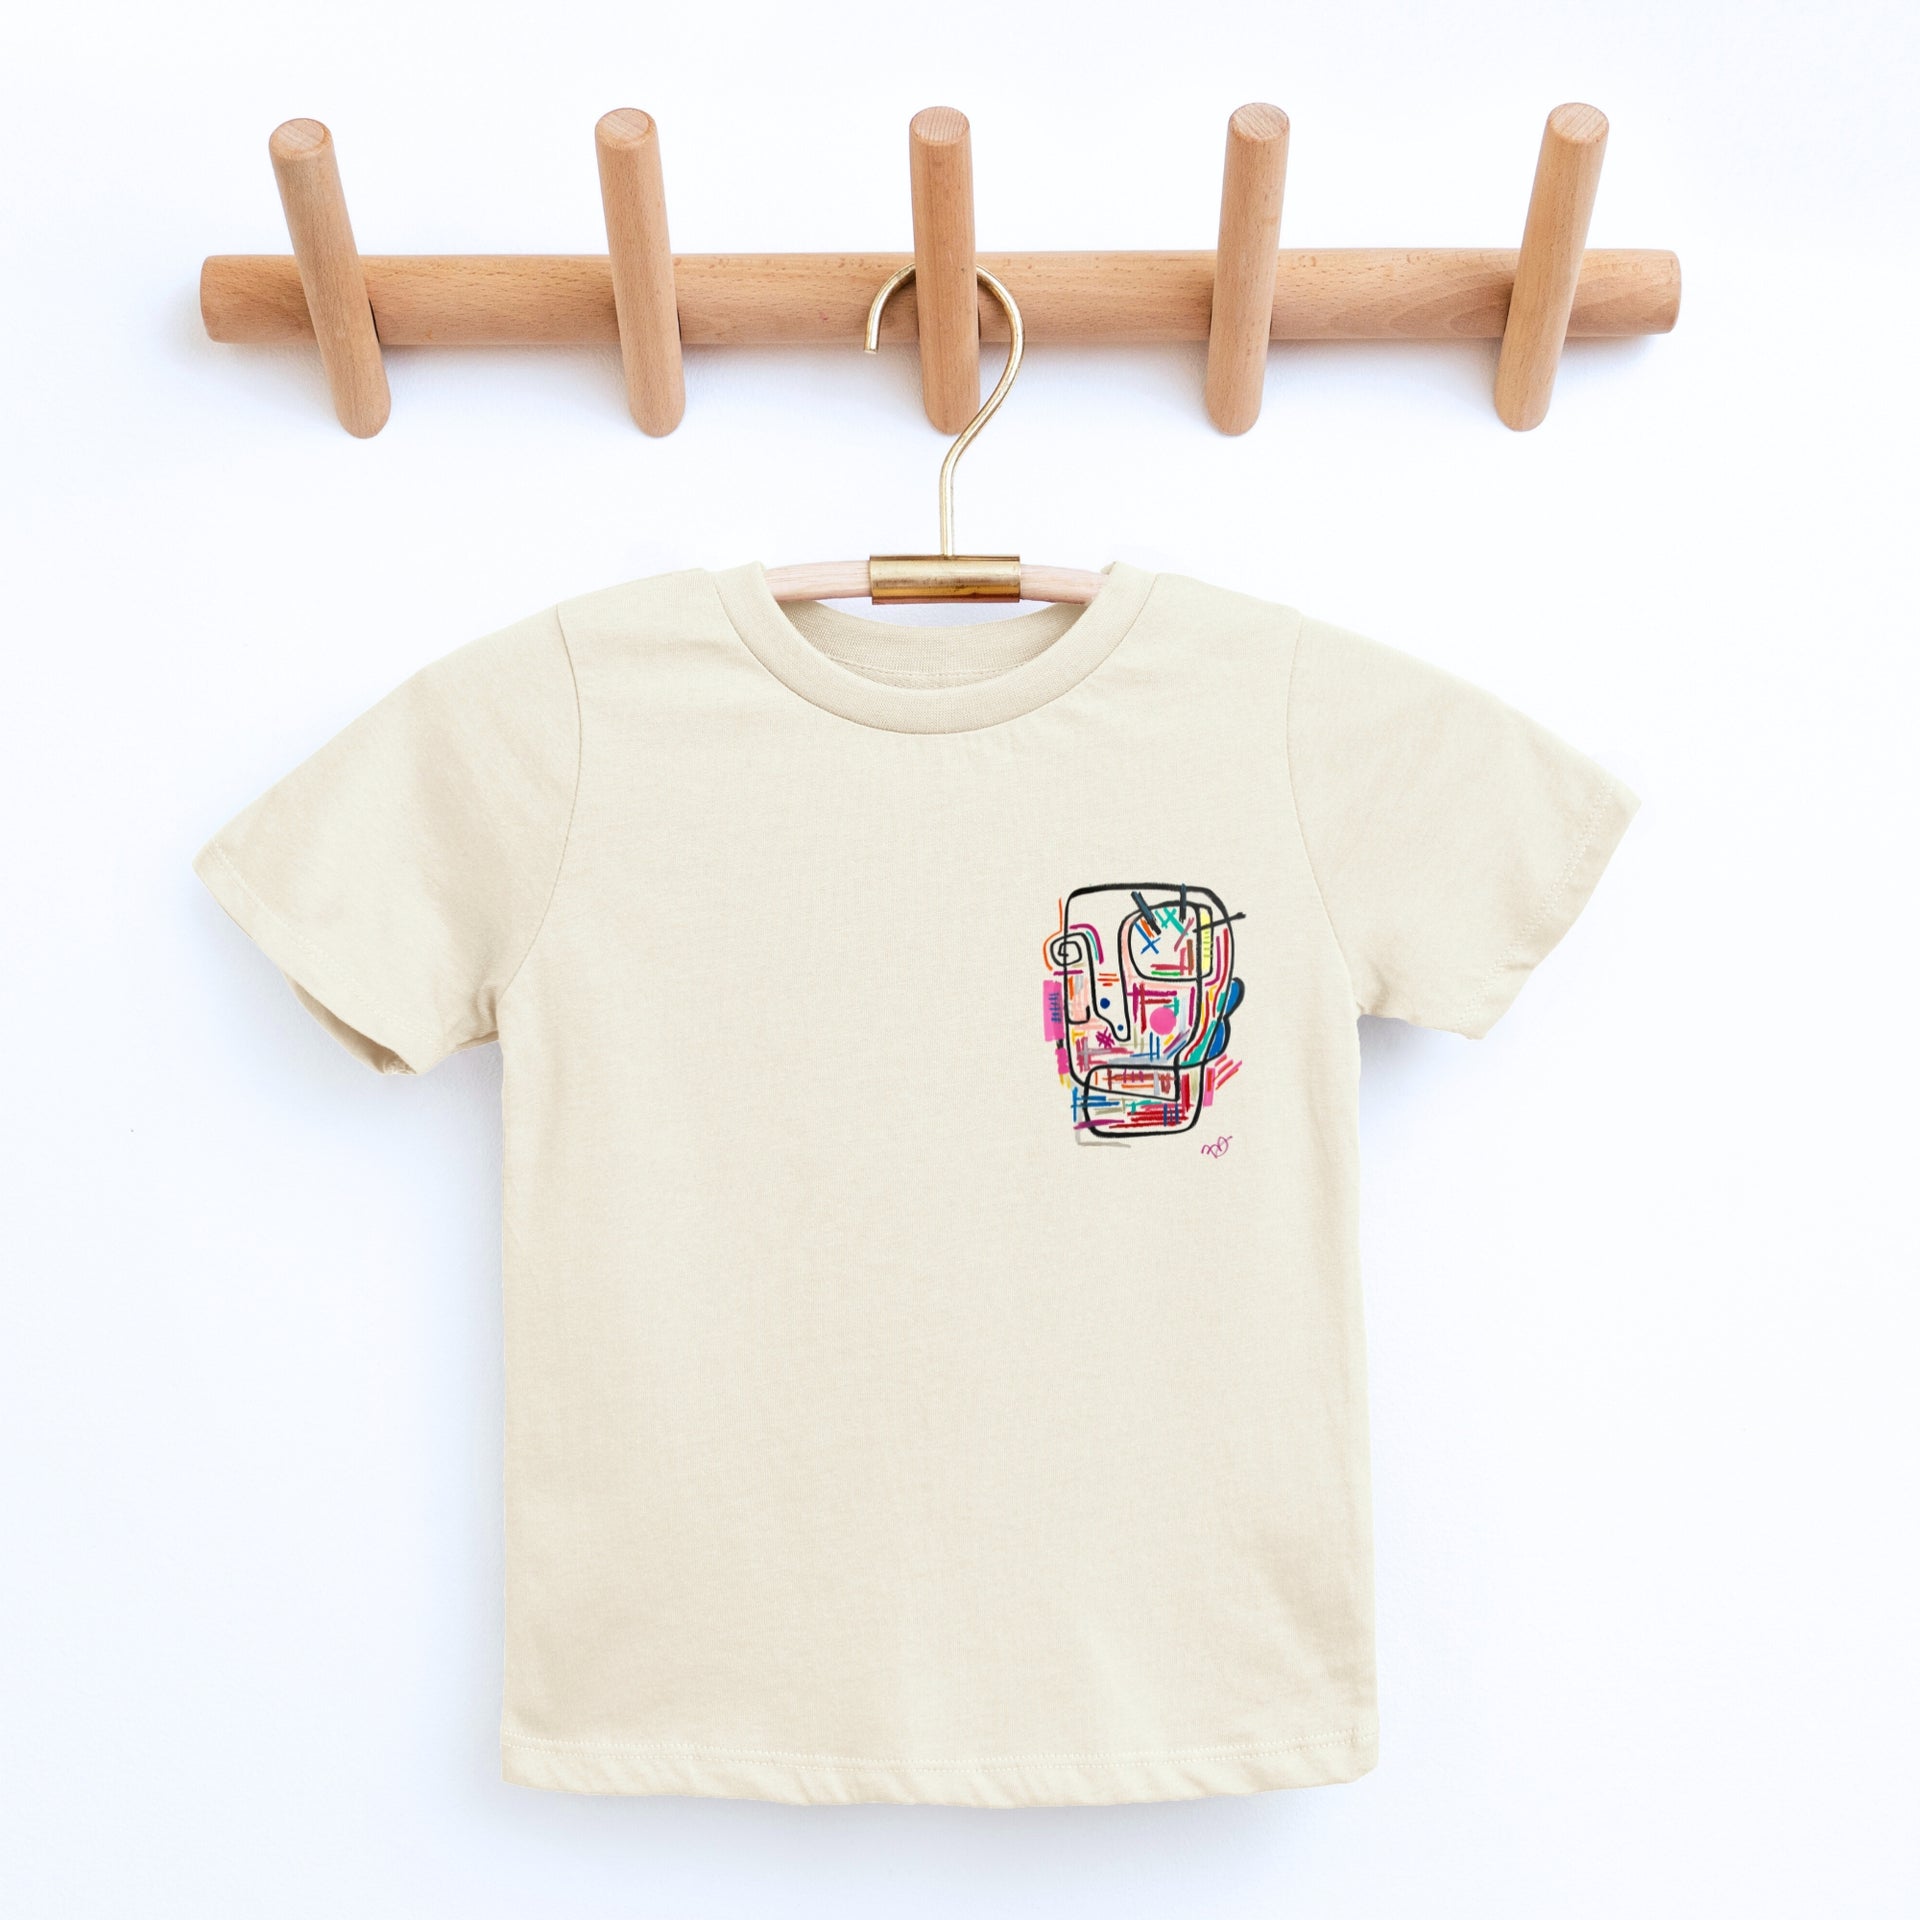 Zella Seamless T-Shirt Kids' L (10/12) Teal Dolphin Melange Space Dye  Dolman S/S 